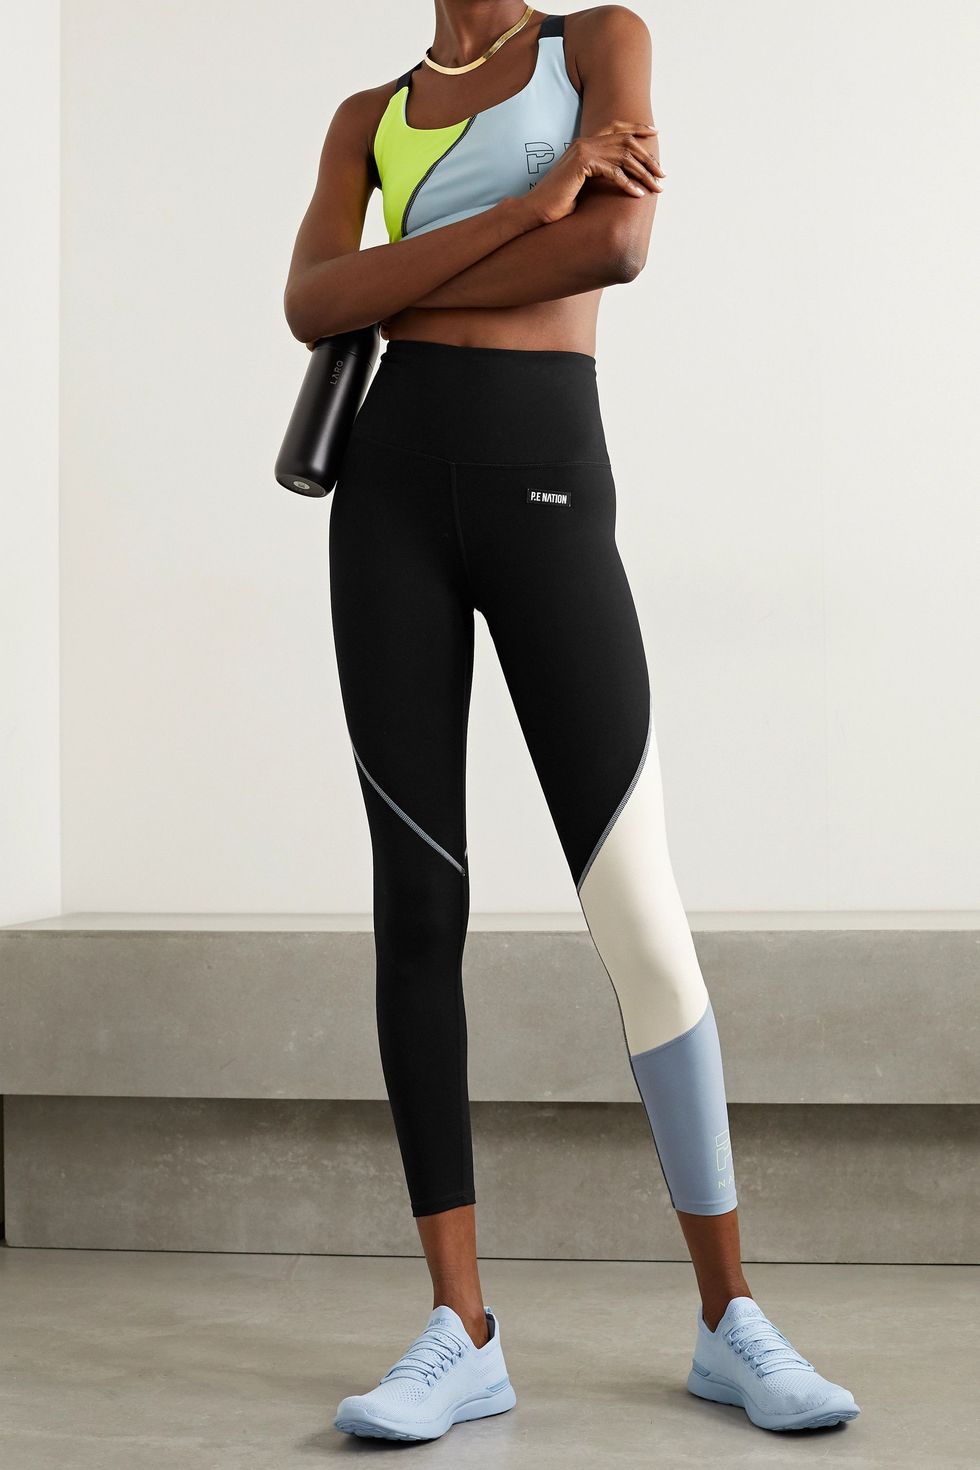 Retriever appliquéd color-block stretch leggings